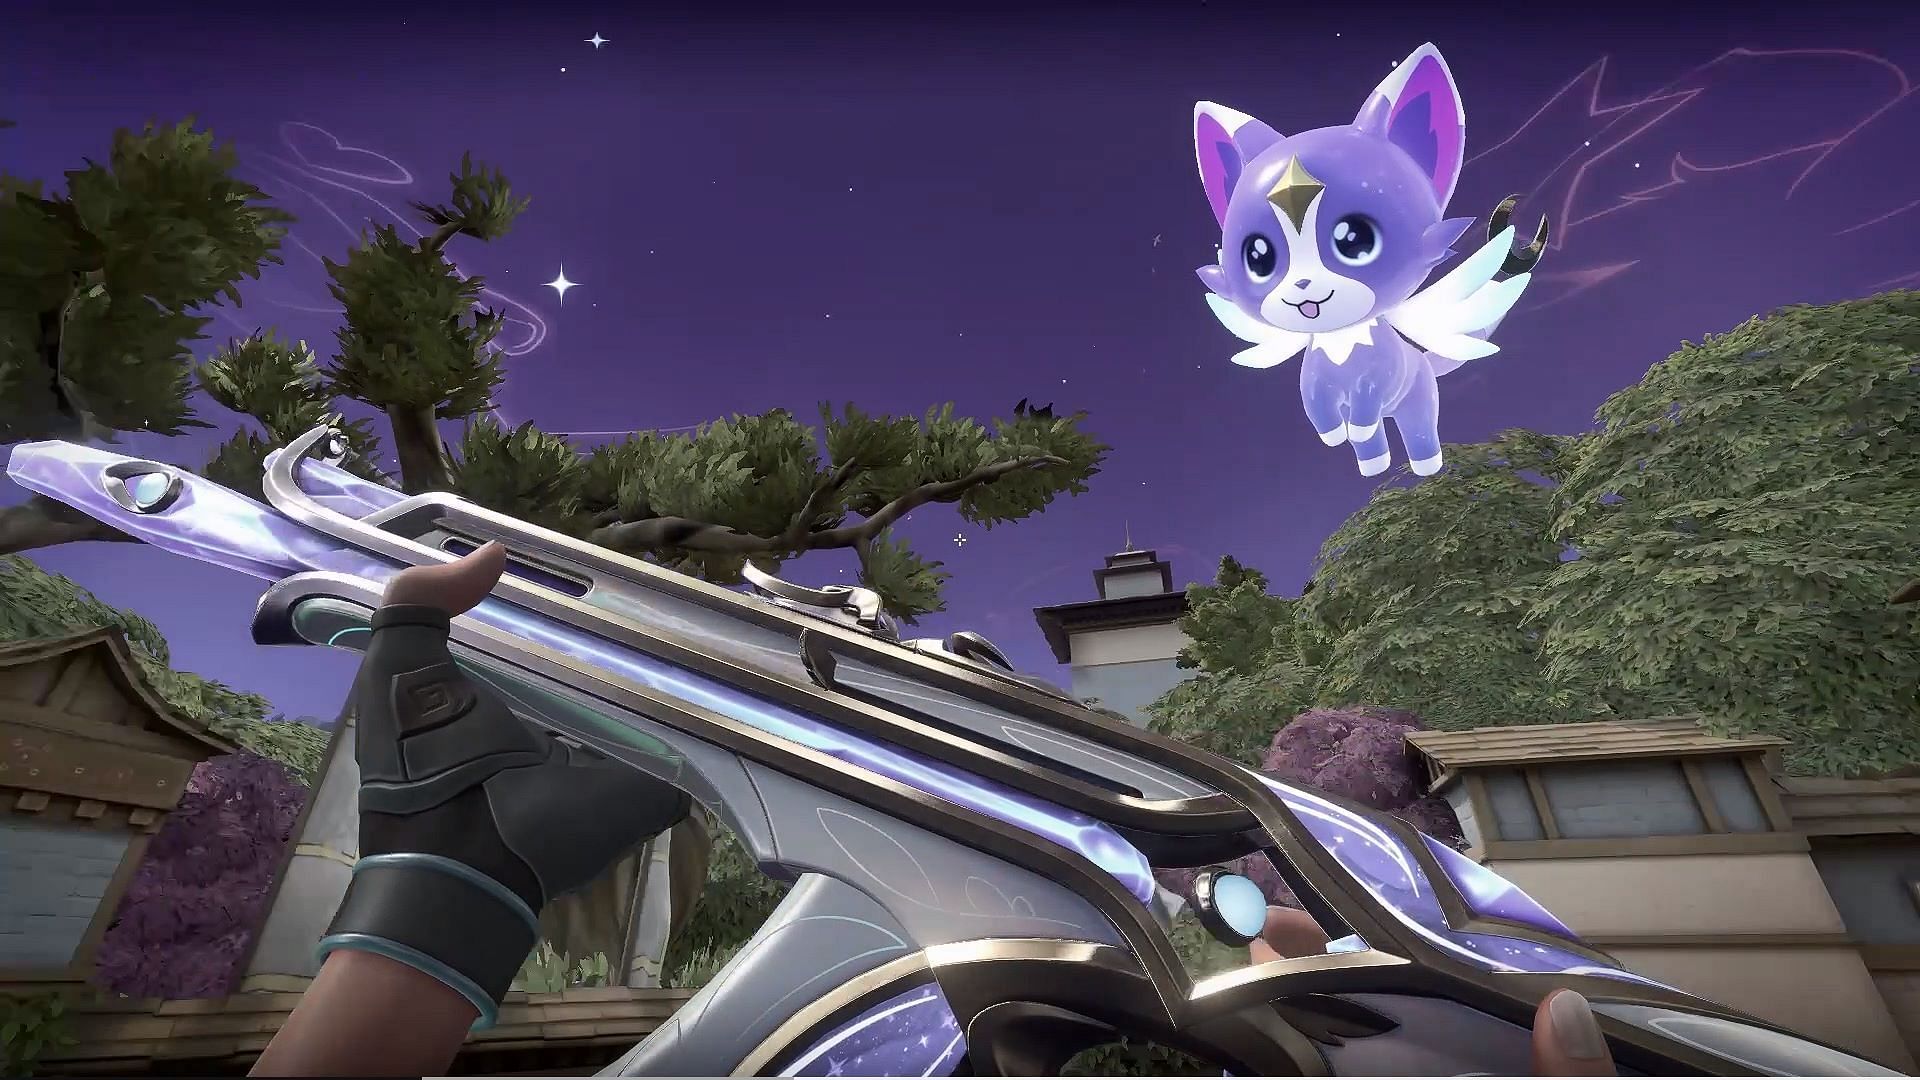 Evori Dreamwings Vandal with the Lunari familiar (Image via Riot Games)